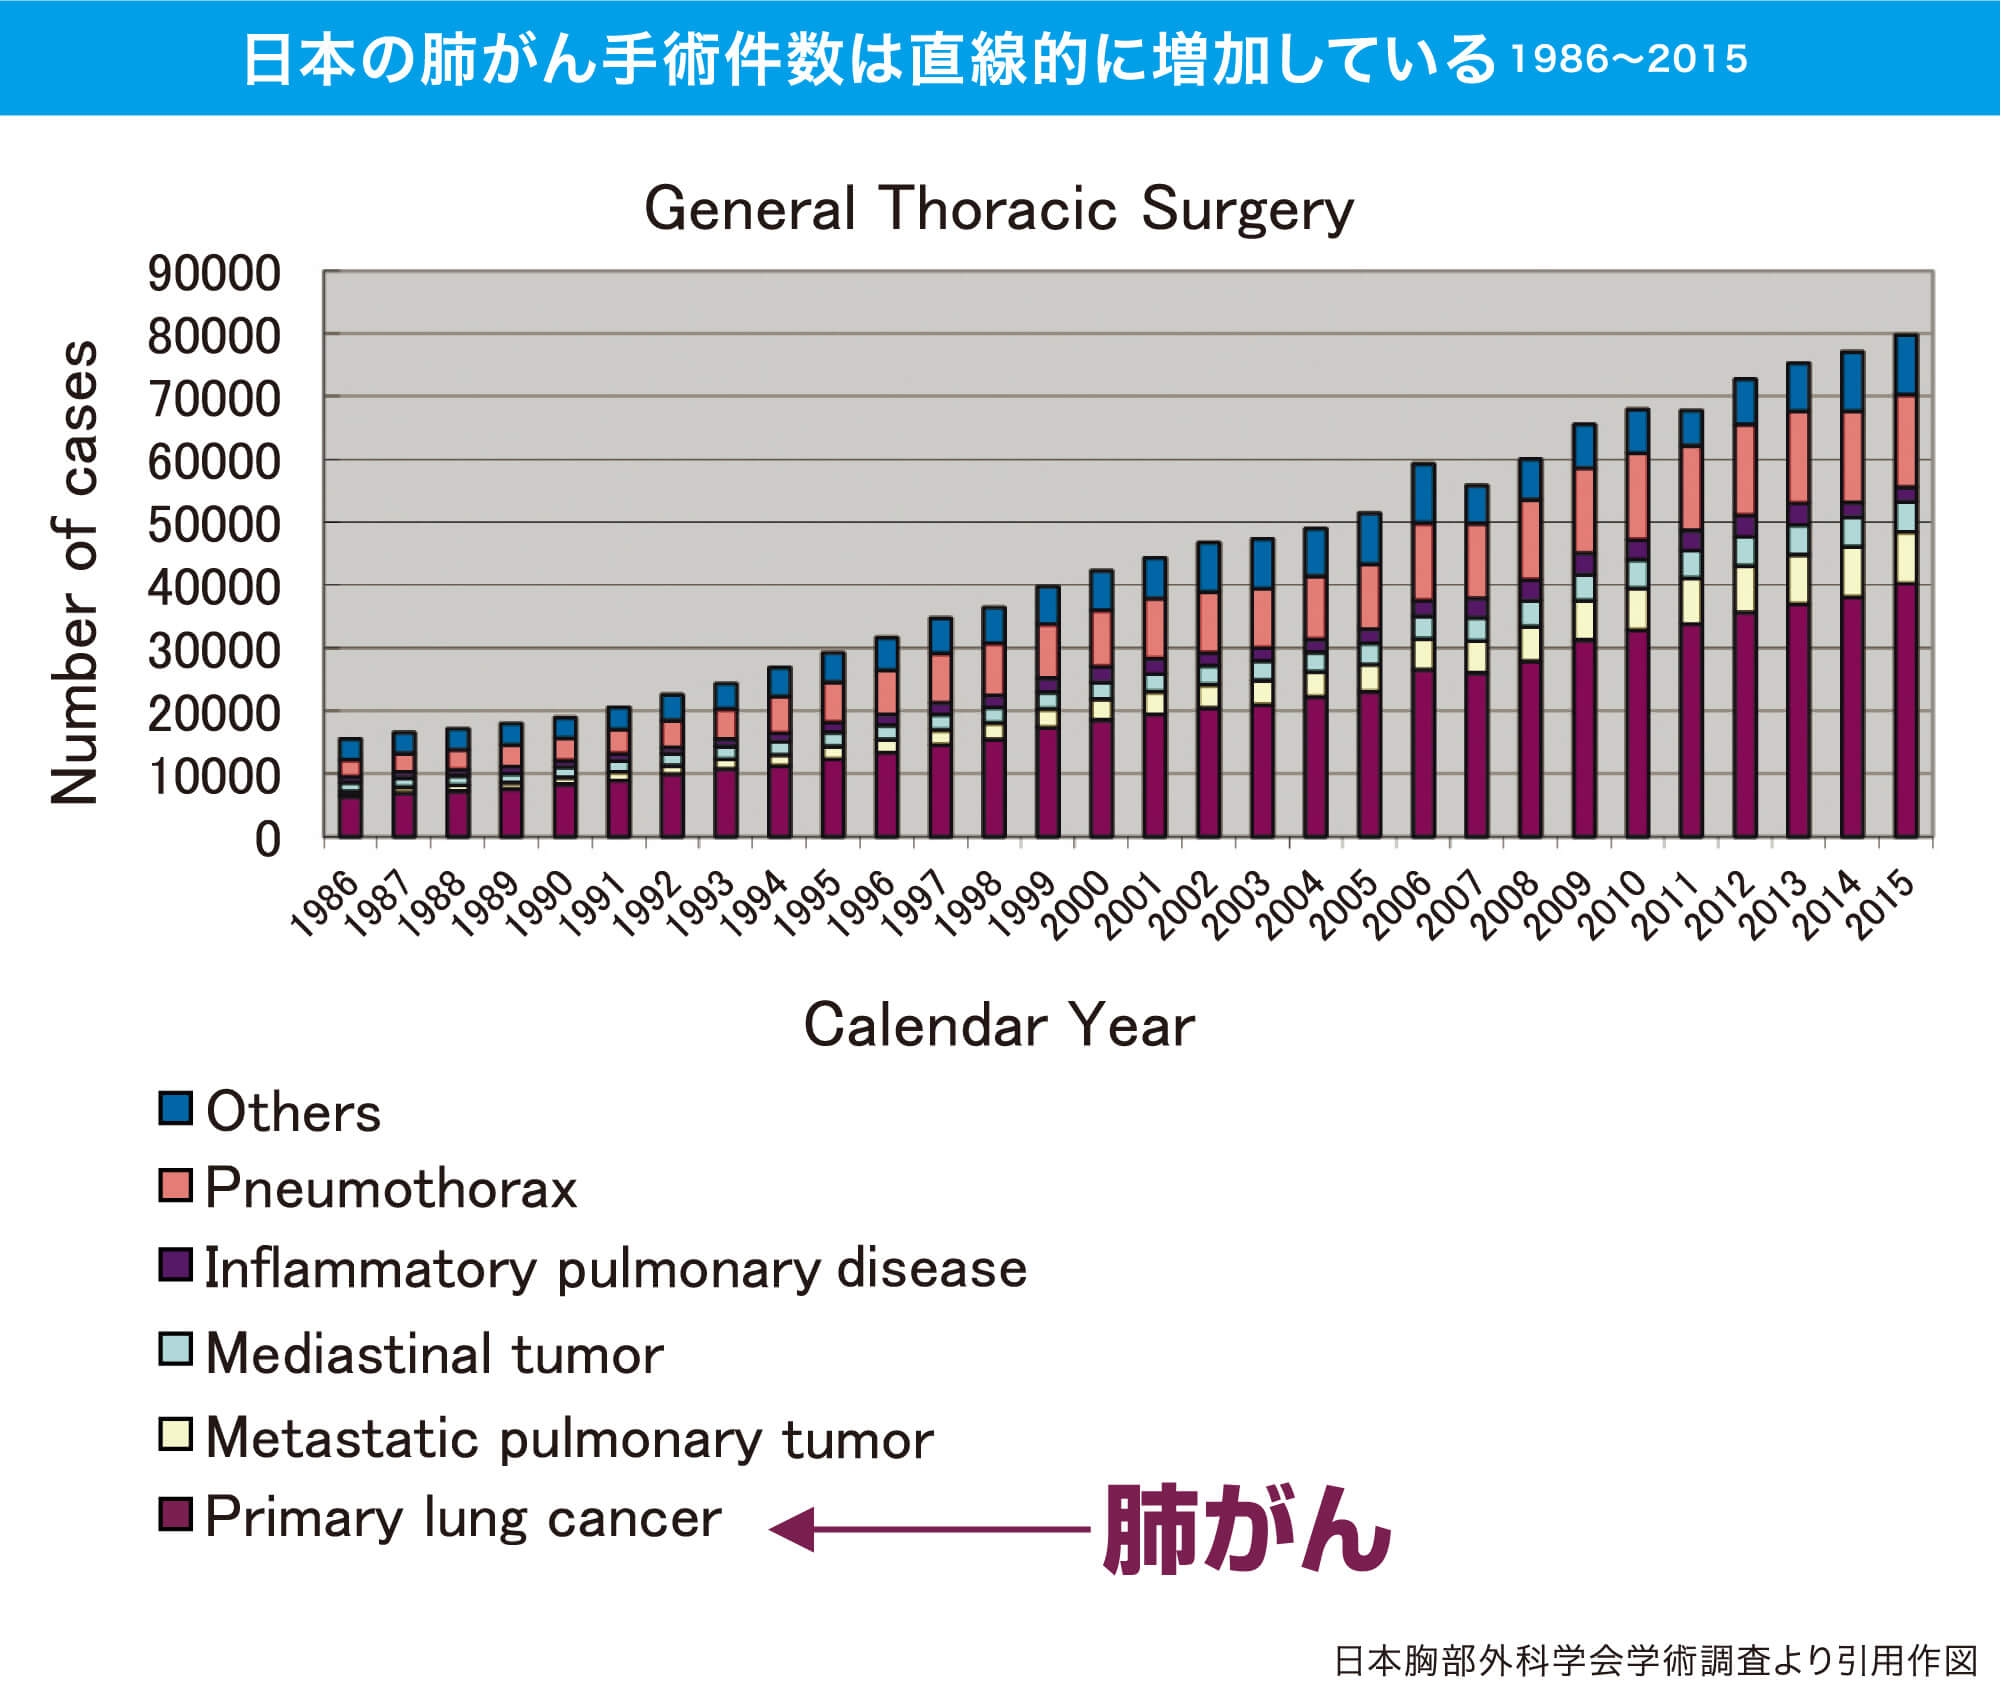 日本の肺がん手術件数は直線的に増加している